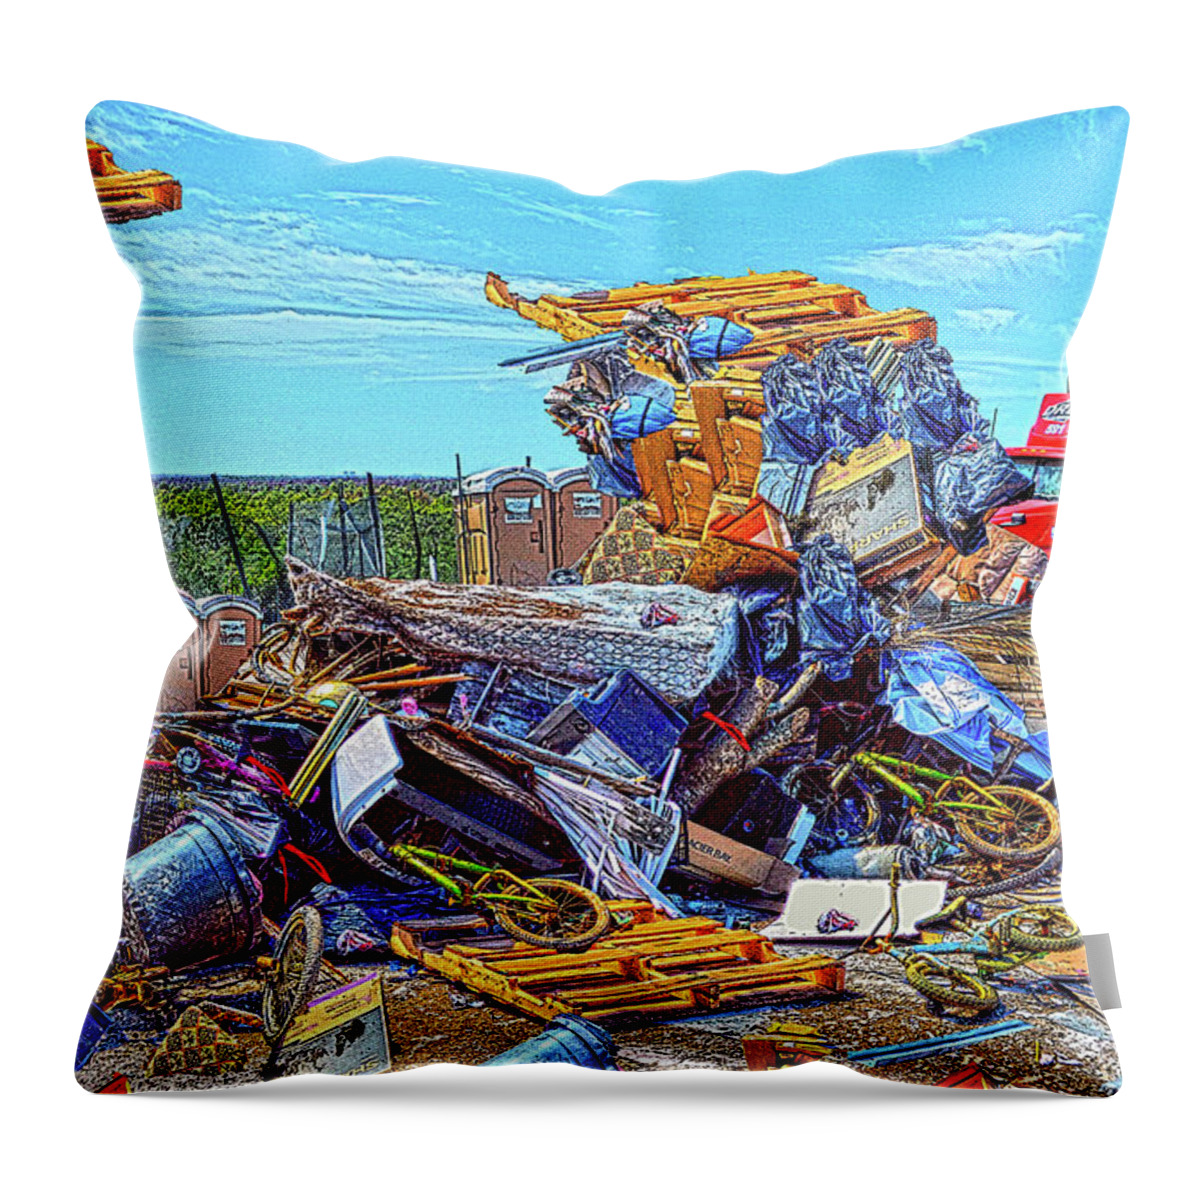 Junk Throw Pillow featuring the digital art Junkyard as Art? by Debra Kewley